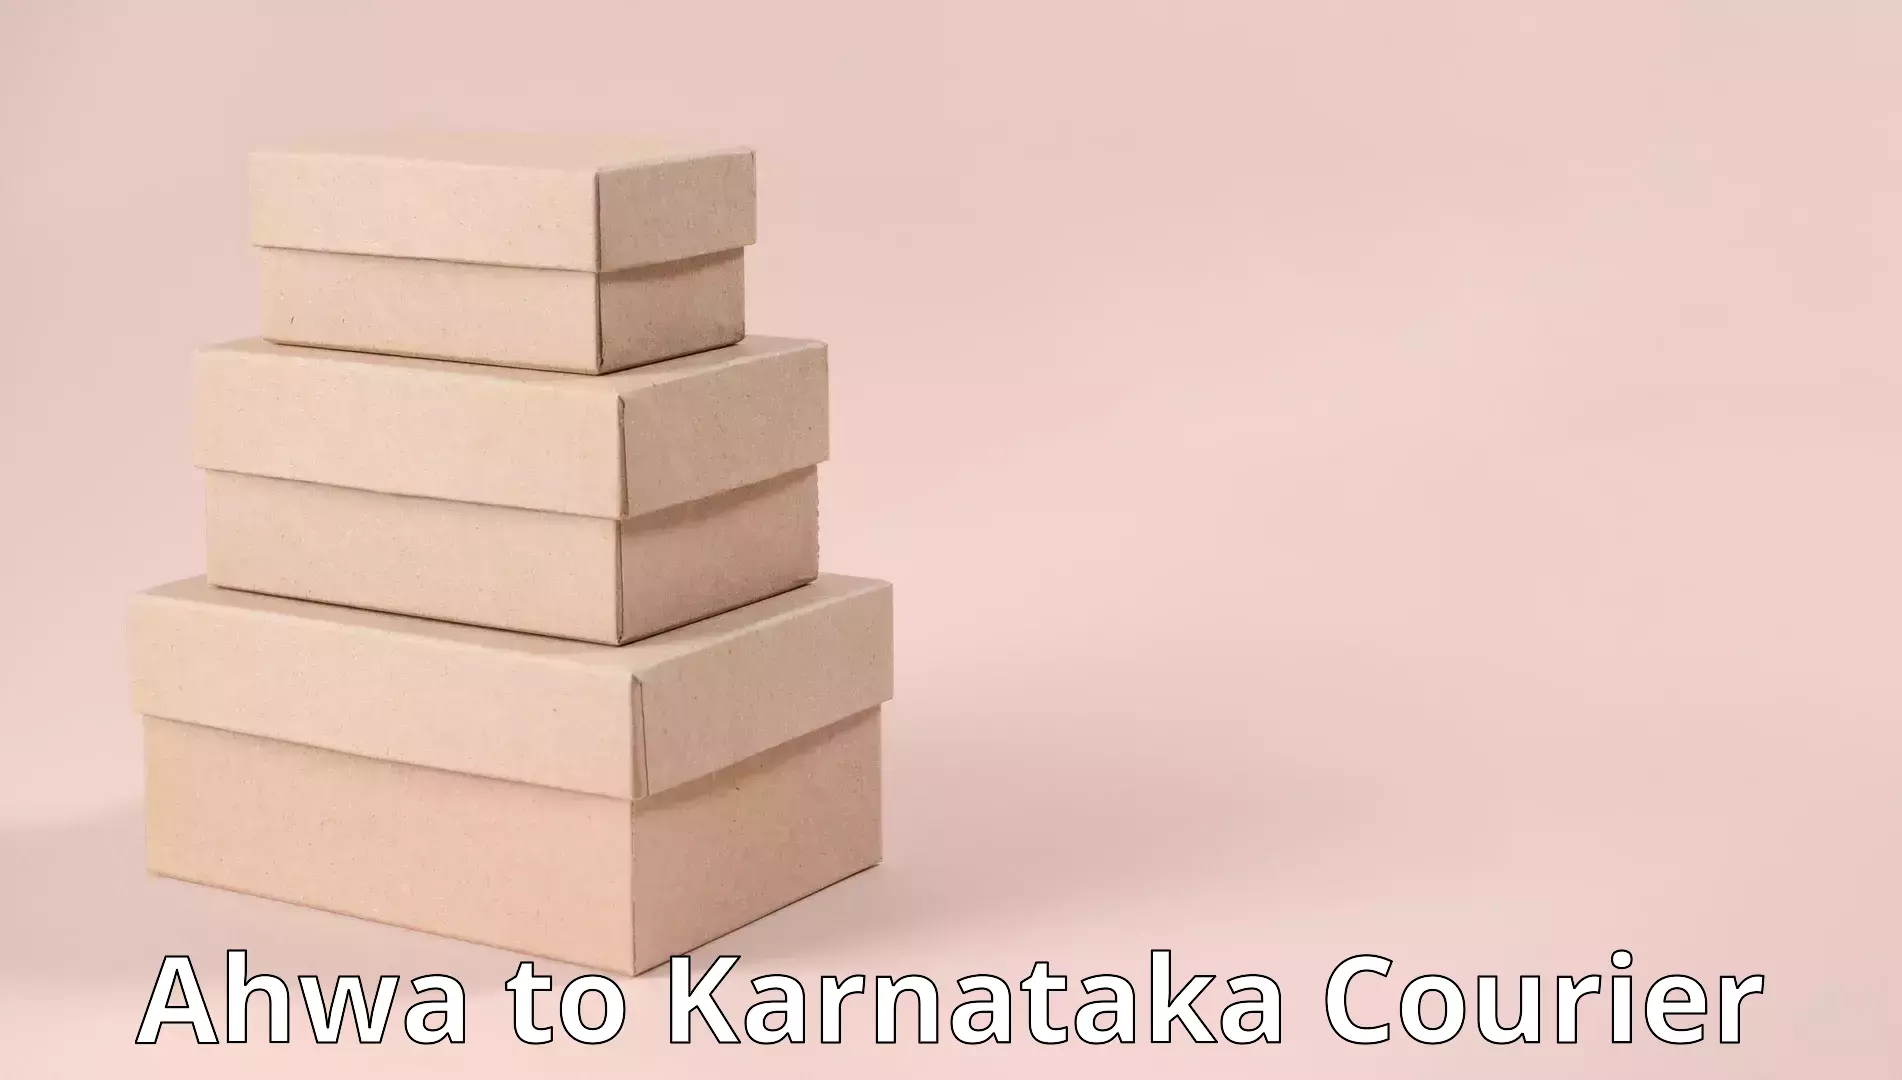 Reliable moving assistance Ahwa to Karnataka